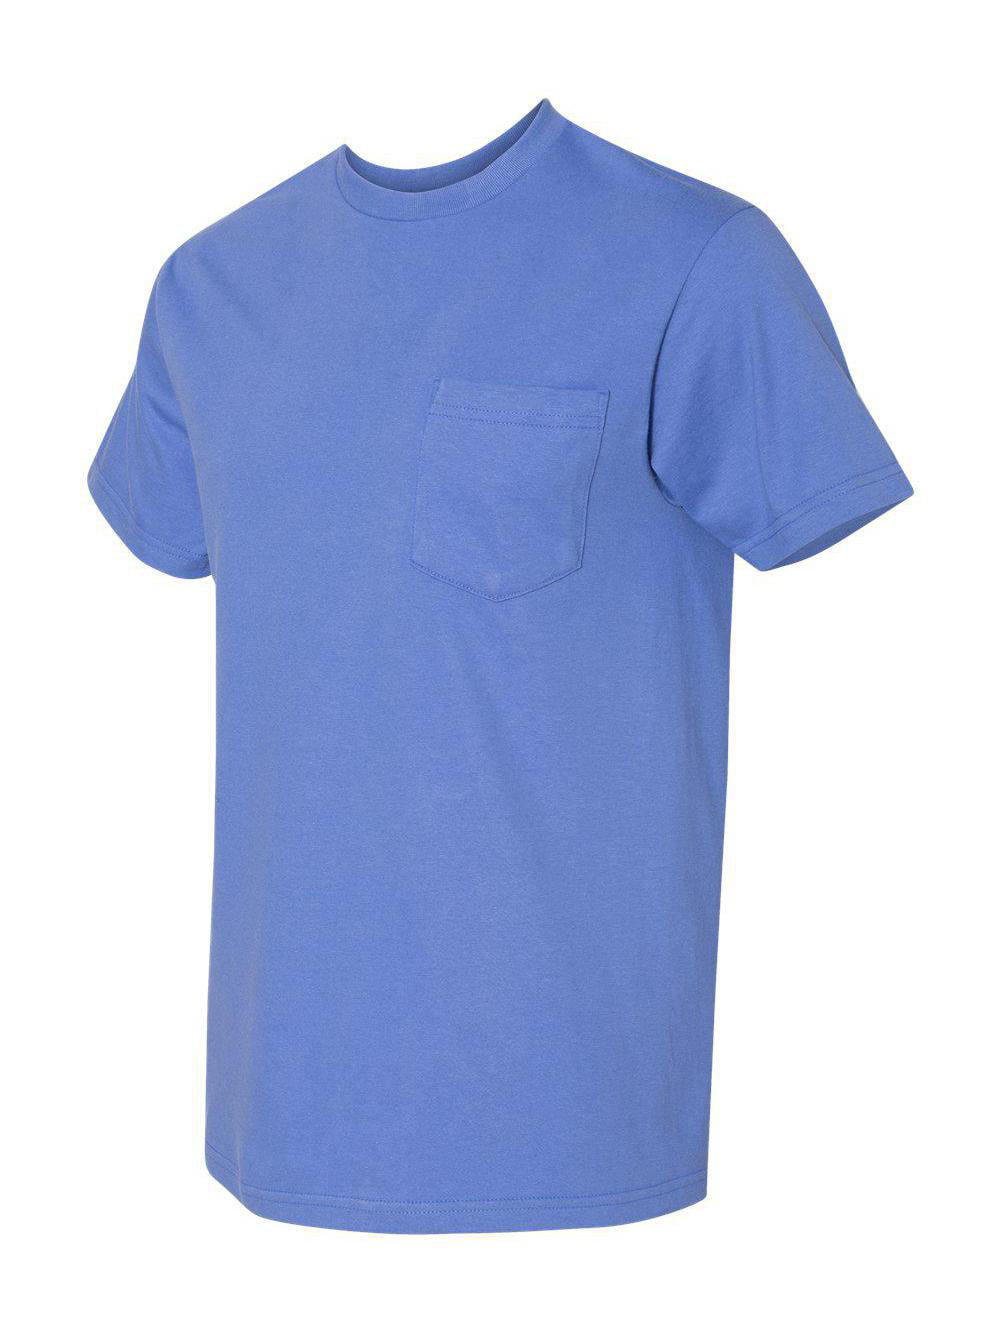 NEW Gildan Men's Hammer Short Sleeve Tee Sport T-Shirts with a Pocket S-5XL H300 